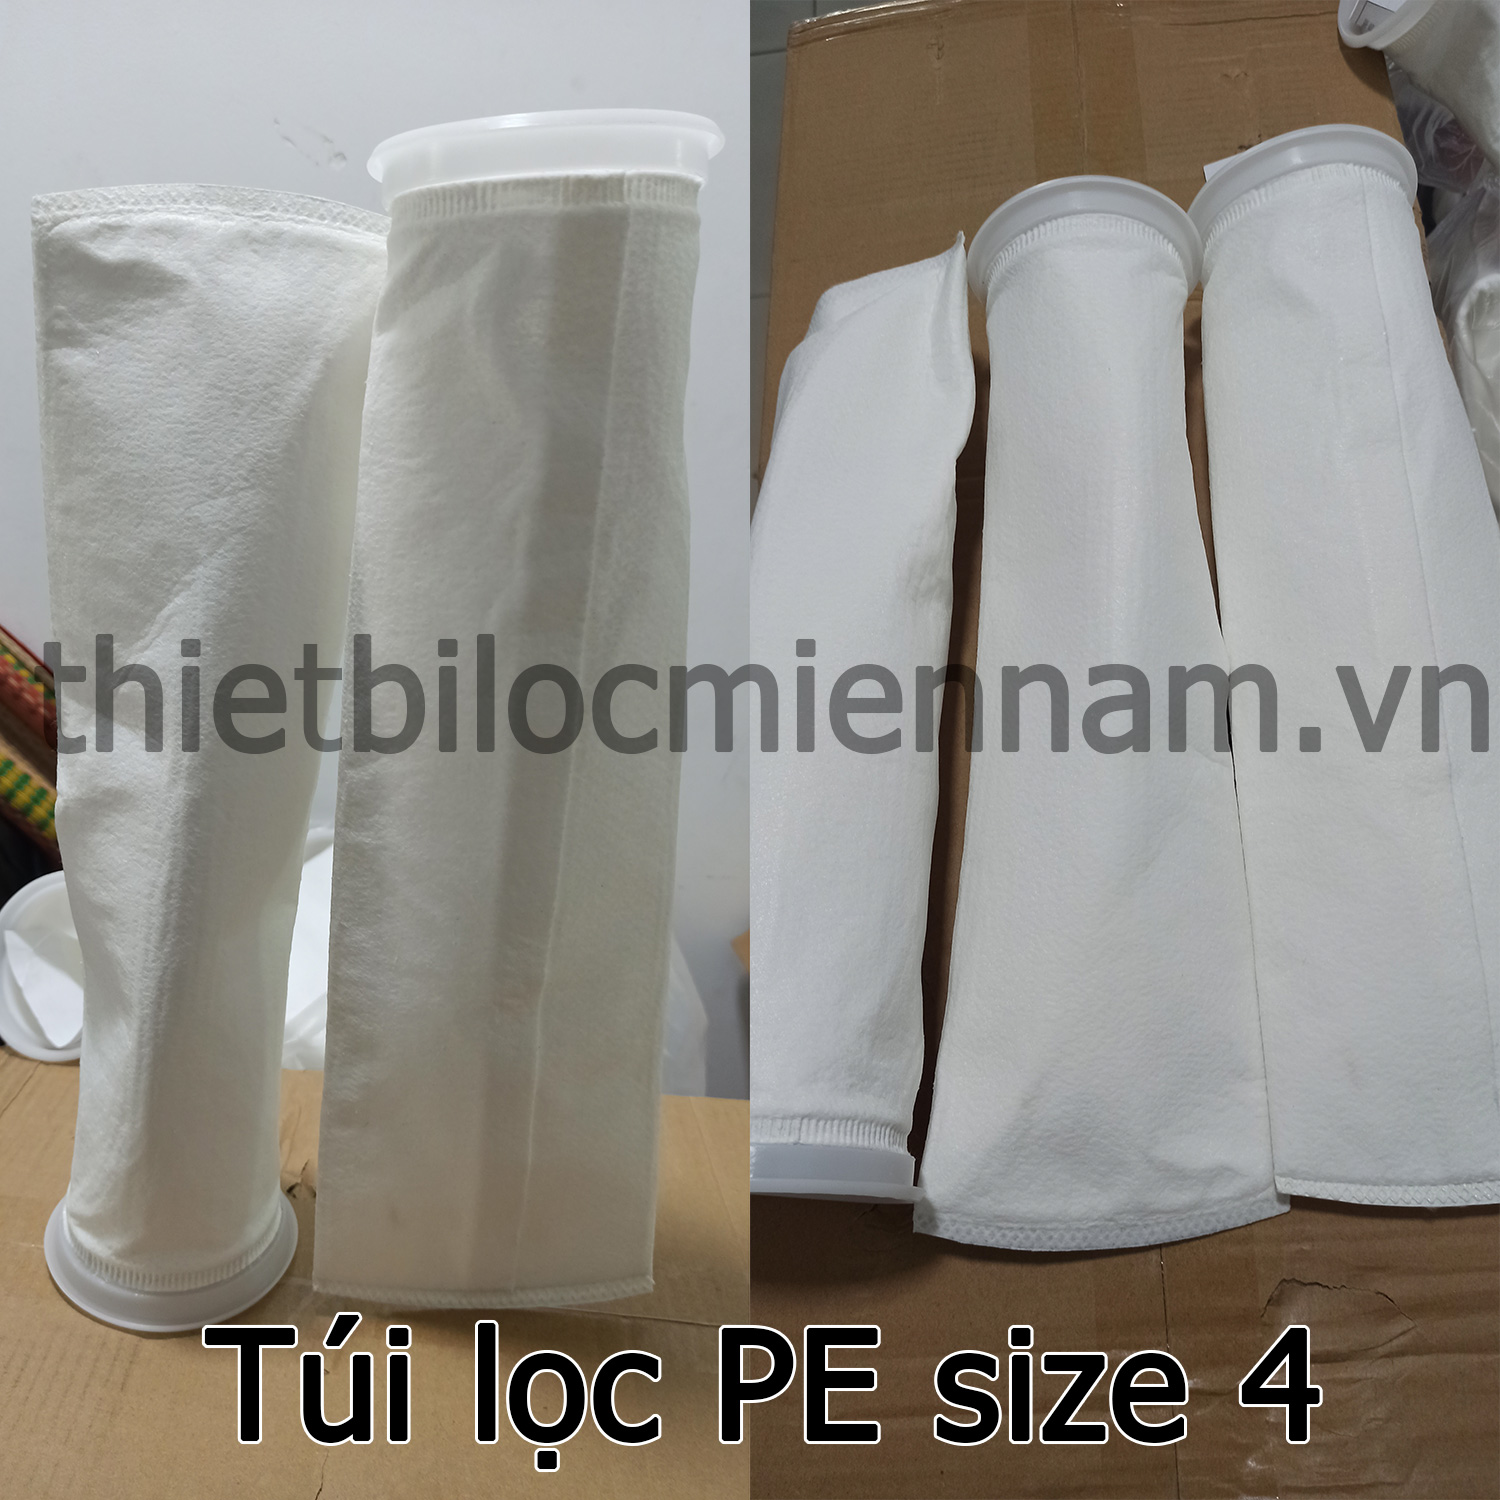 Túi lọc PE (Polyester) size 4